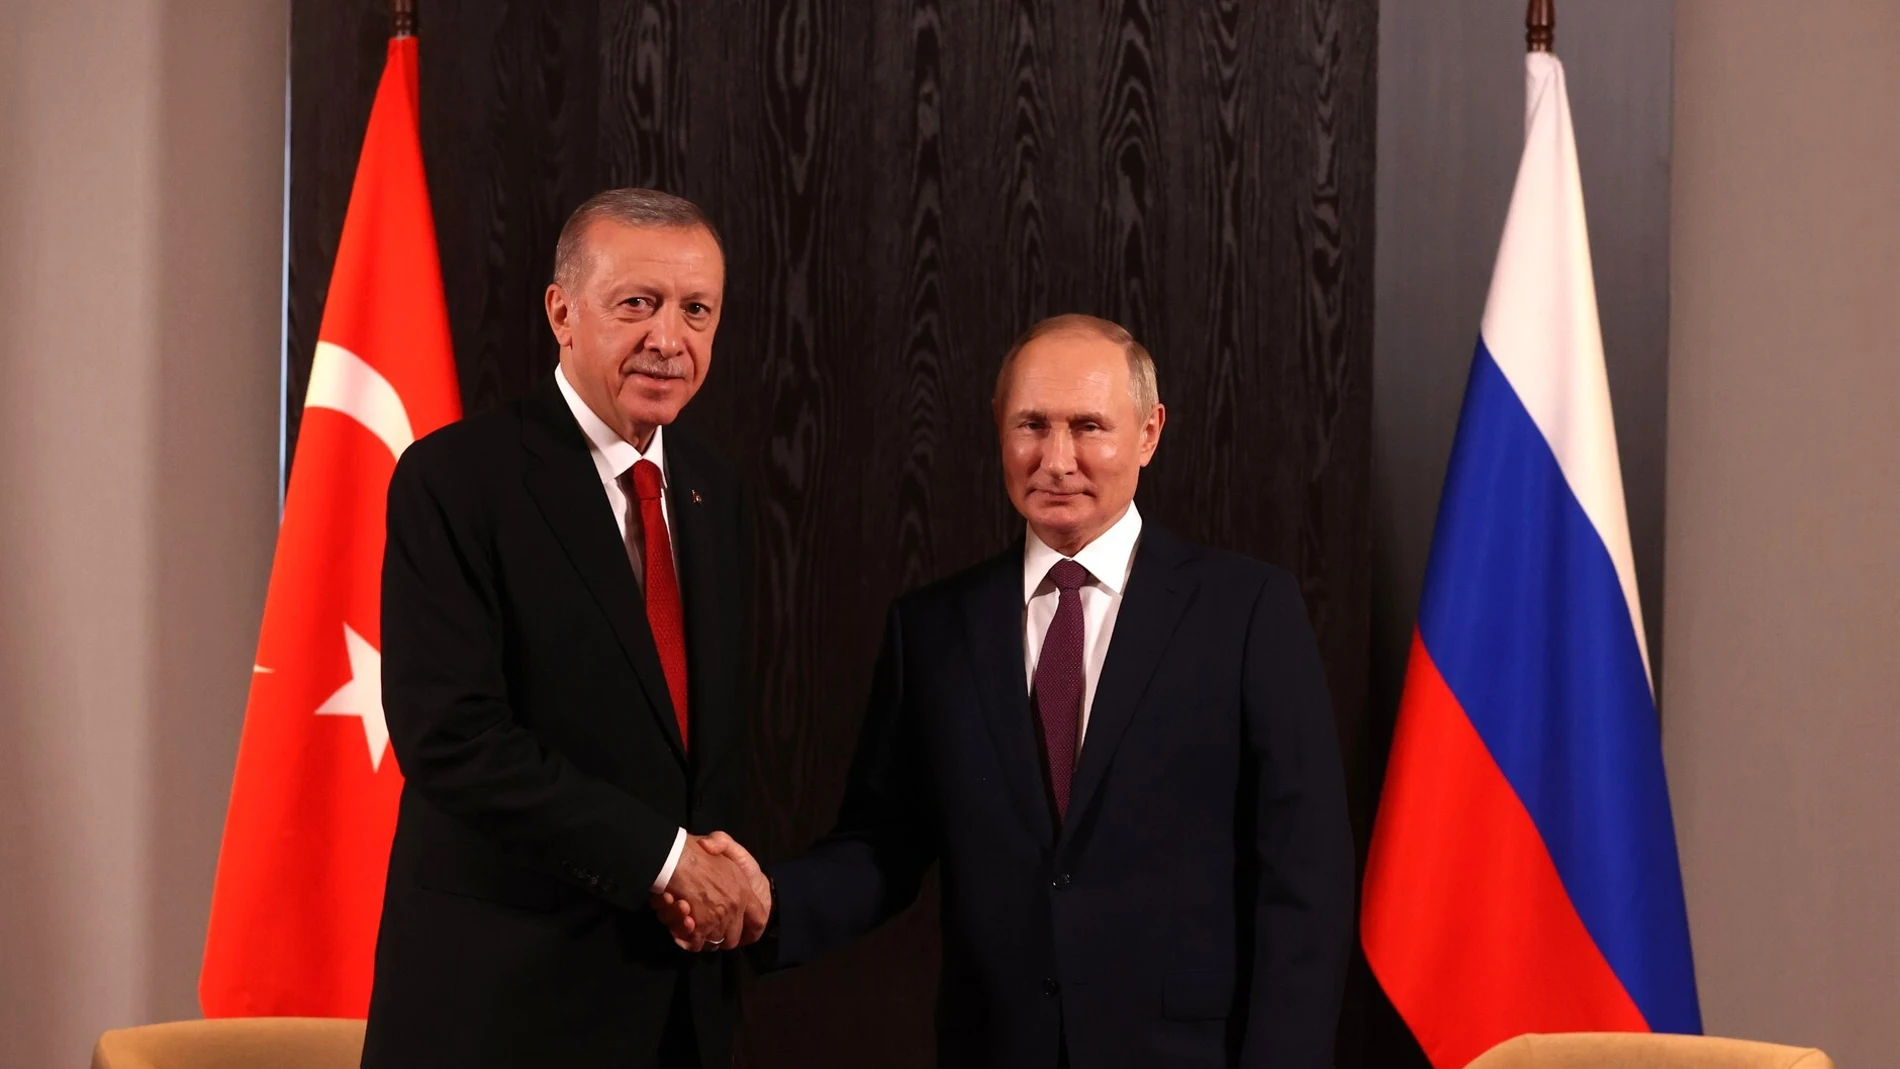 Recep Tayyip Erdogan y Vladímir Putin durante su reciente encuentro en Samarcanda, Uzbekistán